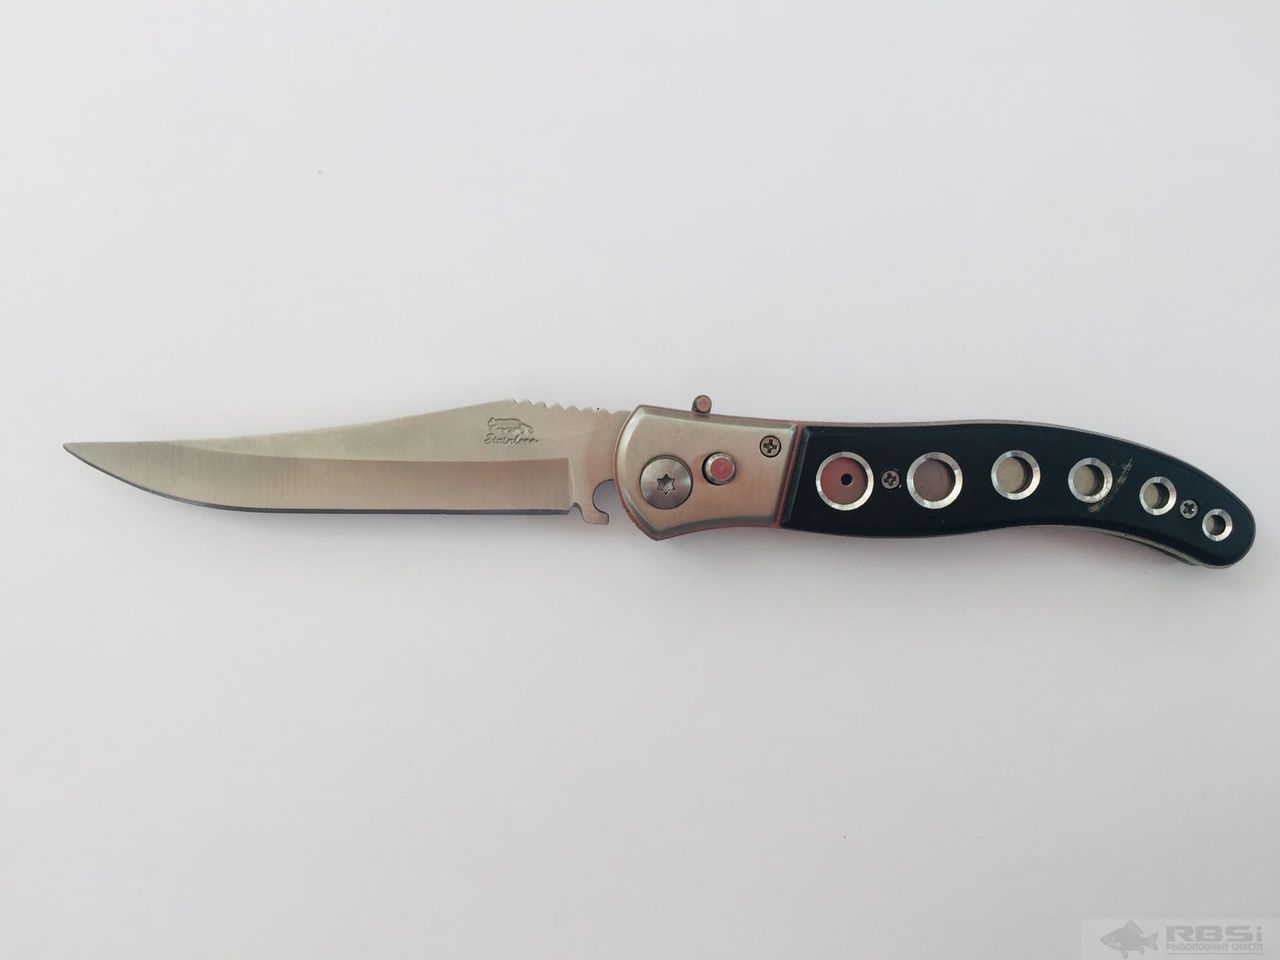 Нож Stainless складной, метал, черный, длина 22,5 см длина рукояти 12,5 см в чехле (А406)